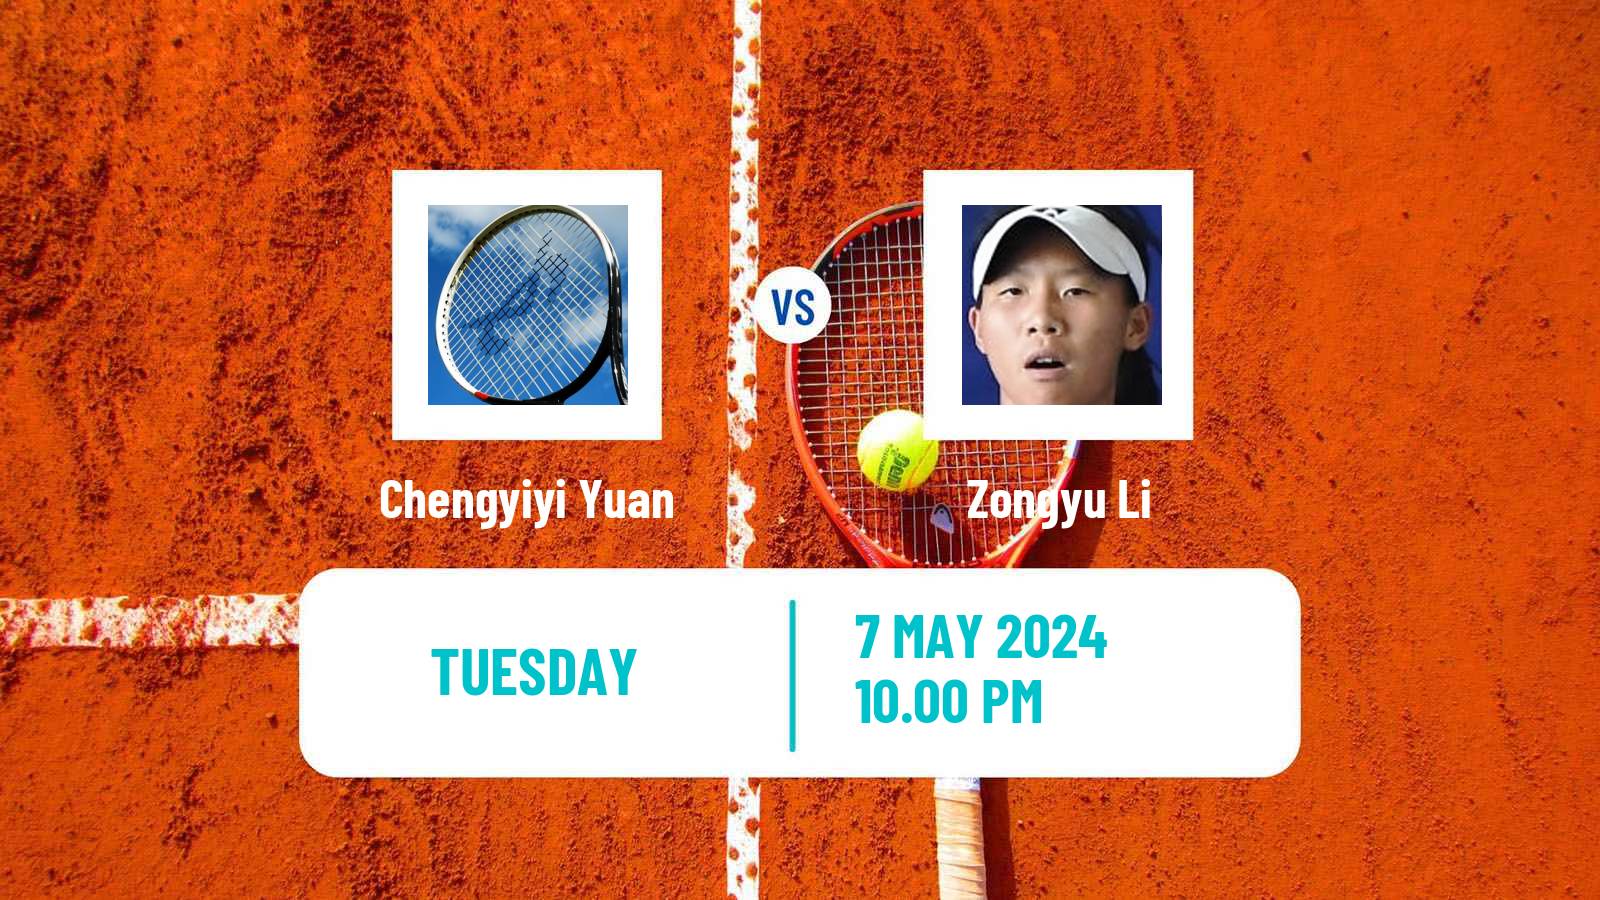 Tennis ITF W75 Luan Women Chengyiyi Yuan - Zongyu Li